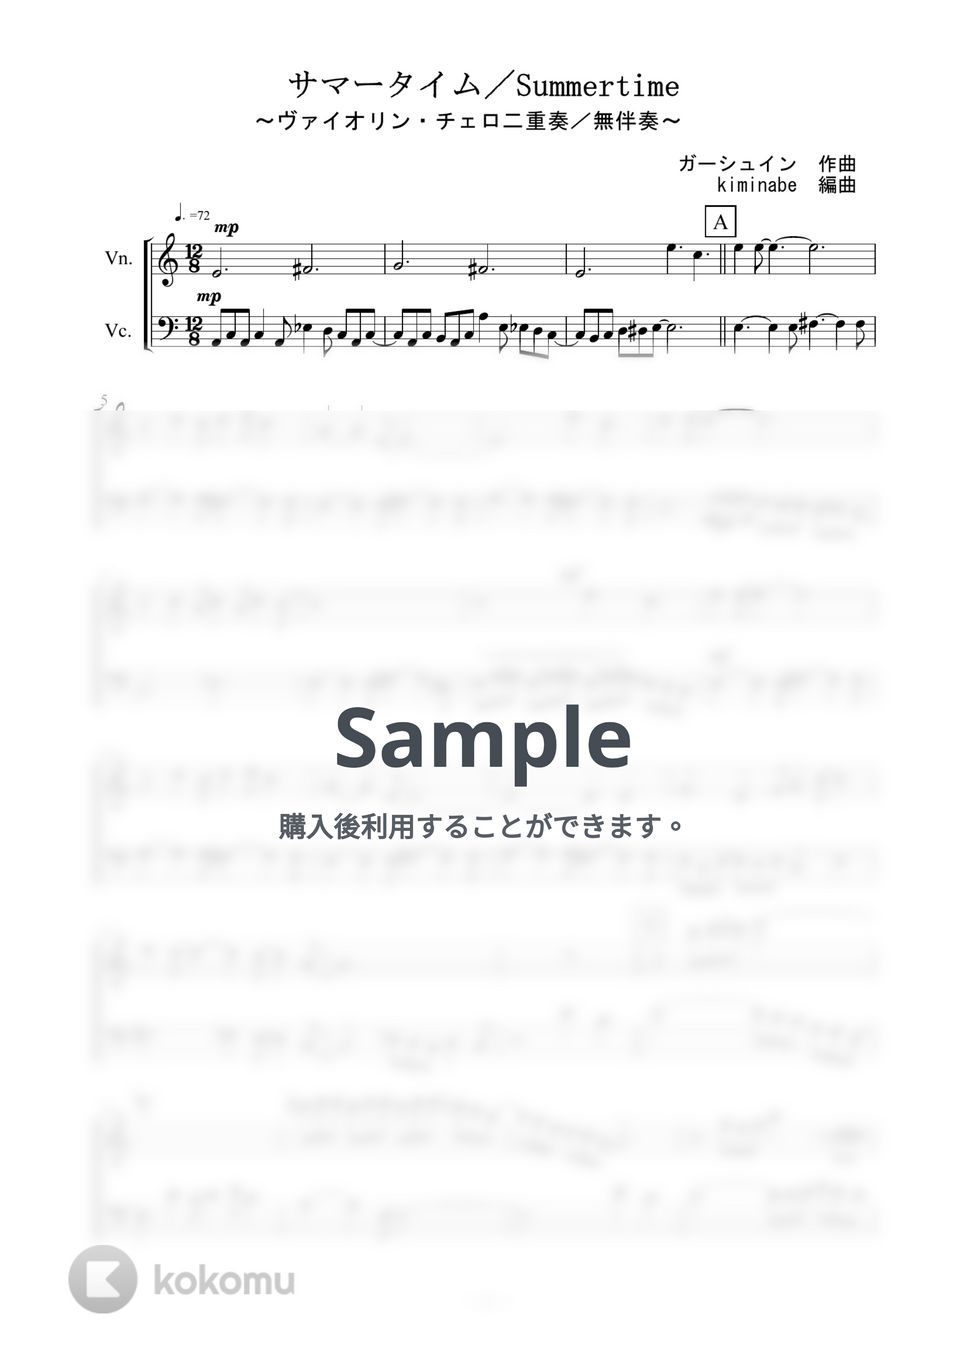 ガーシュイン - Summertime (ヴァイオリン・チェロ二重奏／無伴奏) by kiminabe